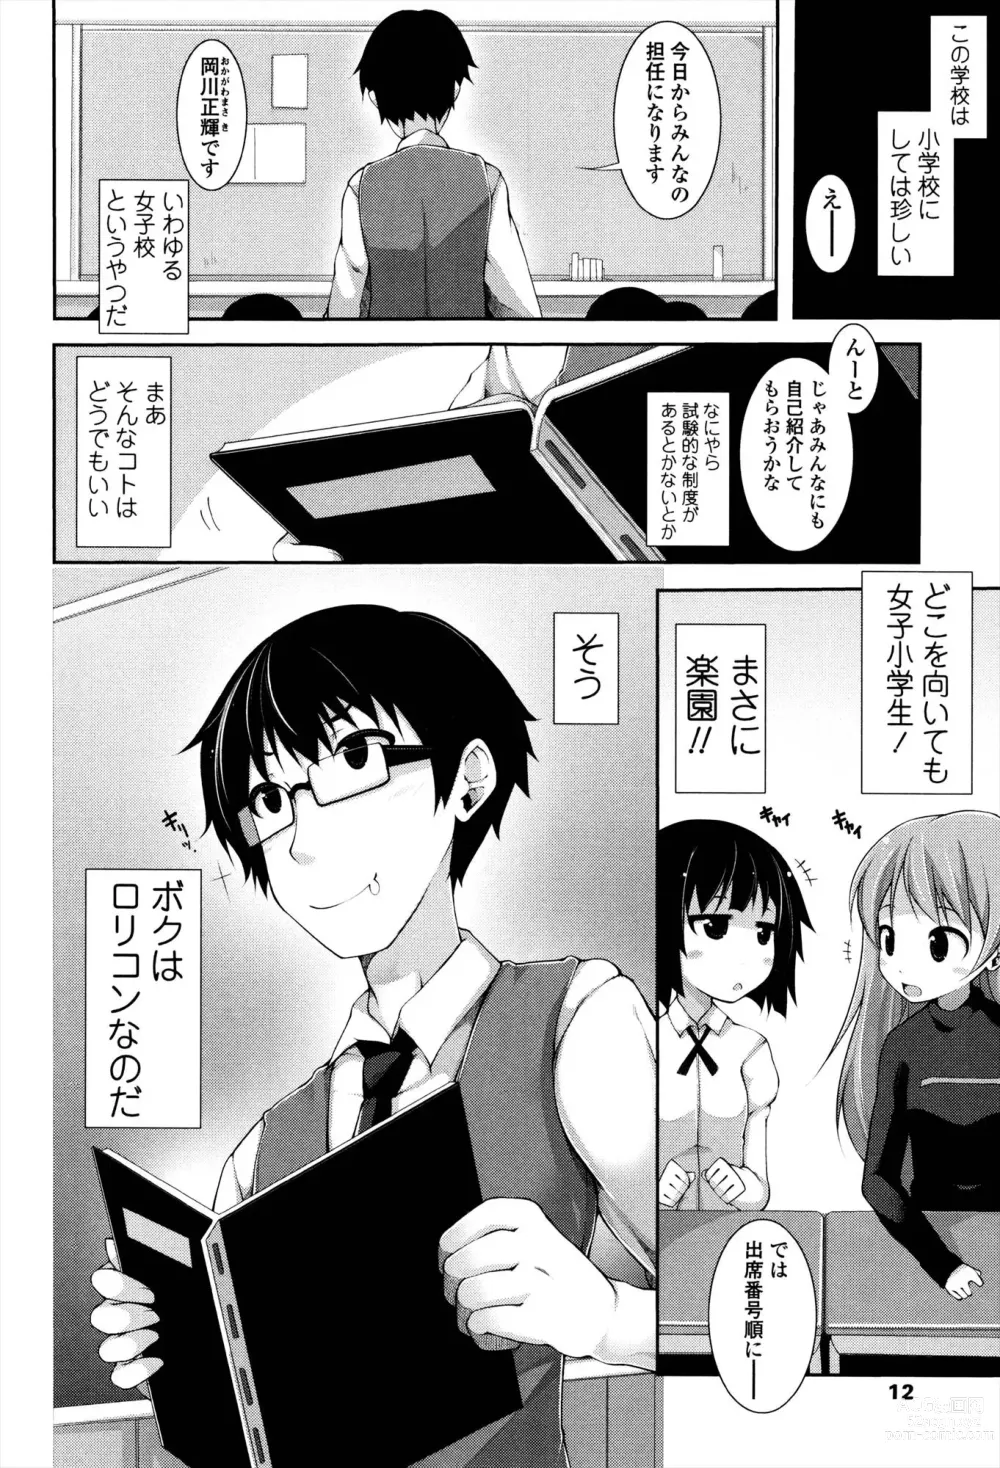 Page 10 of manga Sensei to Issho